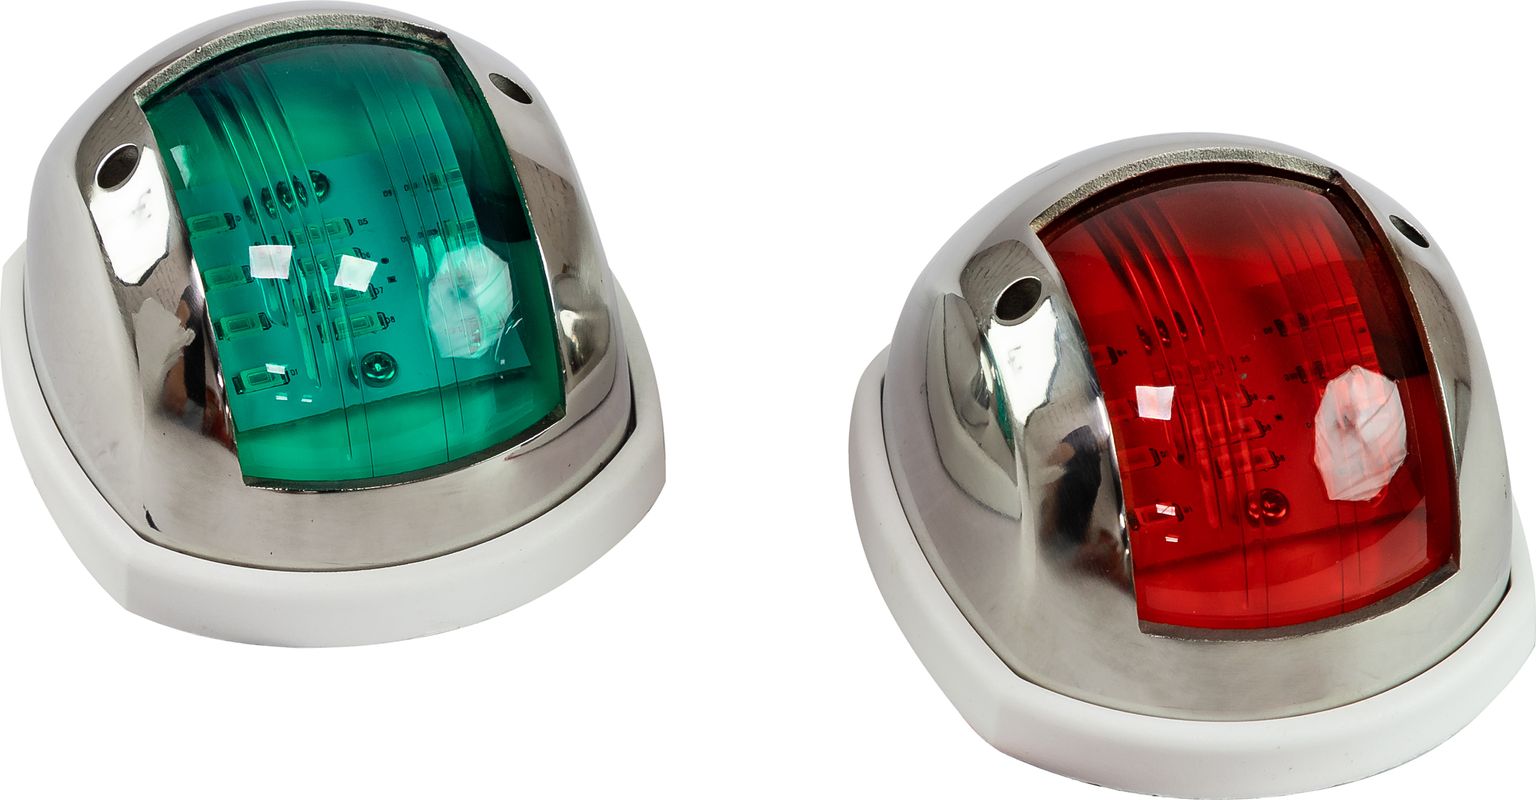 Огни ходовые 89х55 мм комплект (красный, зеленый), LED, нержавеющий корпус LPSDLPTLED0289 огни ходовые светодиодные 95х60 мм нержавеющий корпус c91106sb